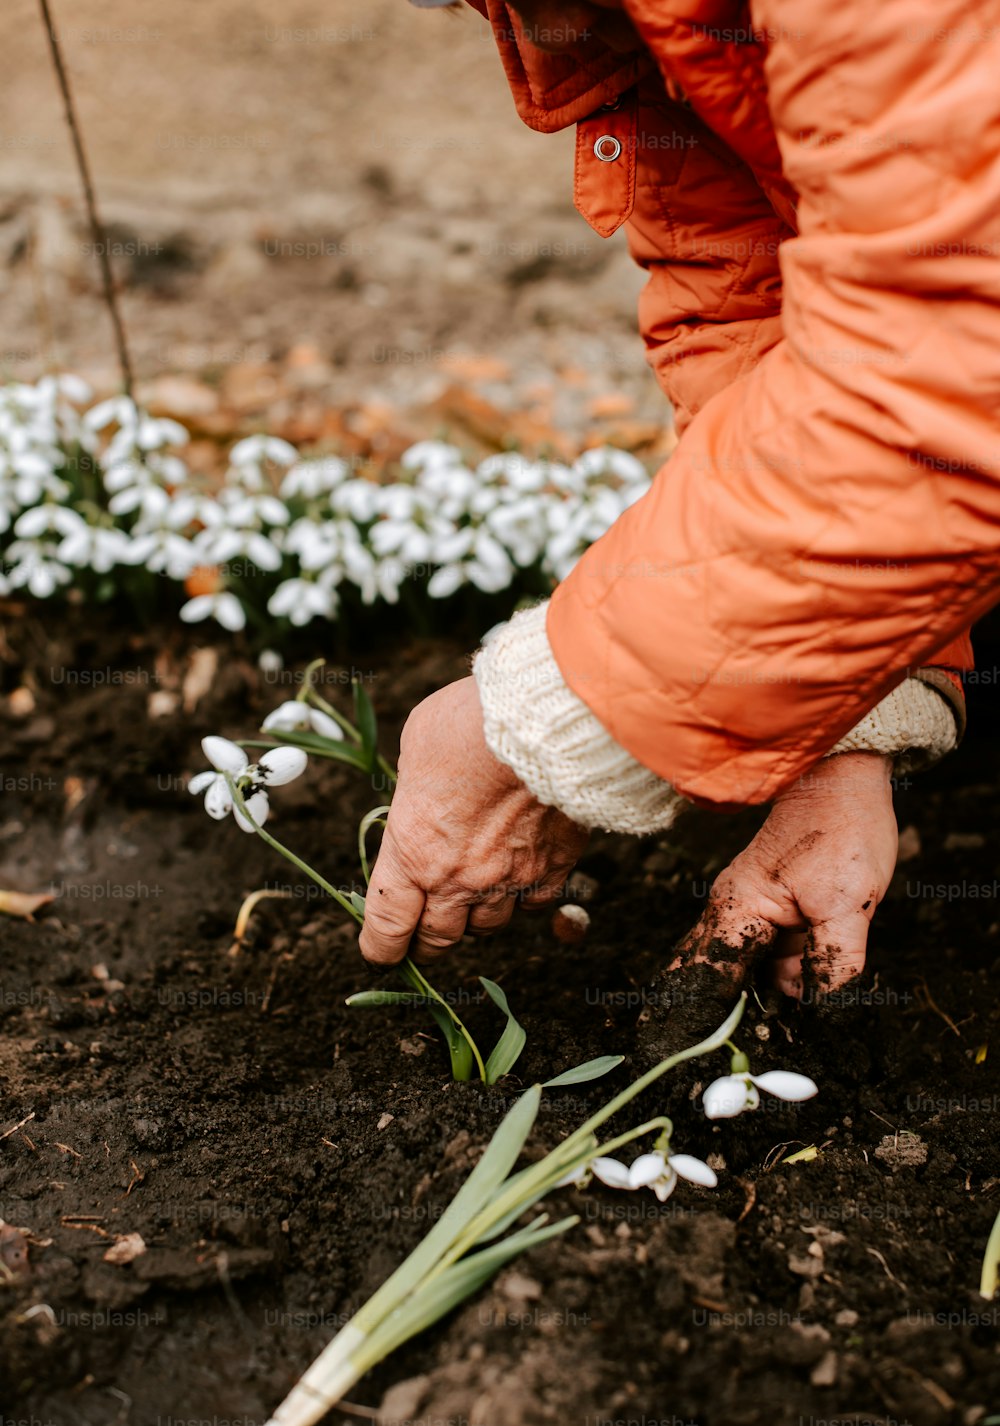 オレンジ色のジャケットを着た人が花を植えている